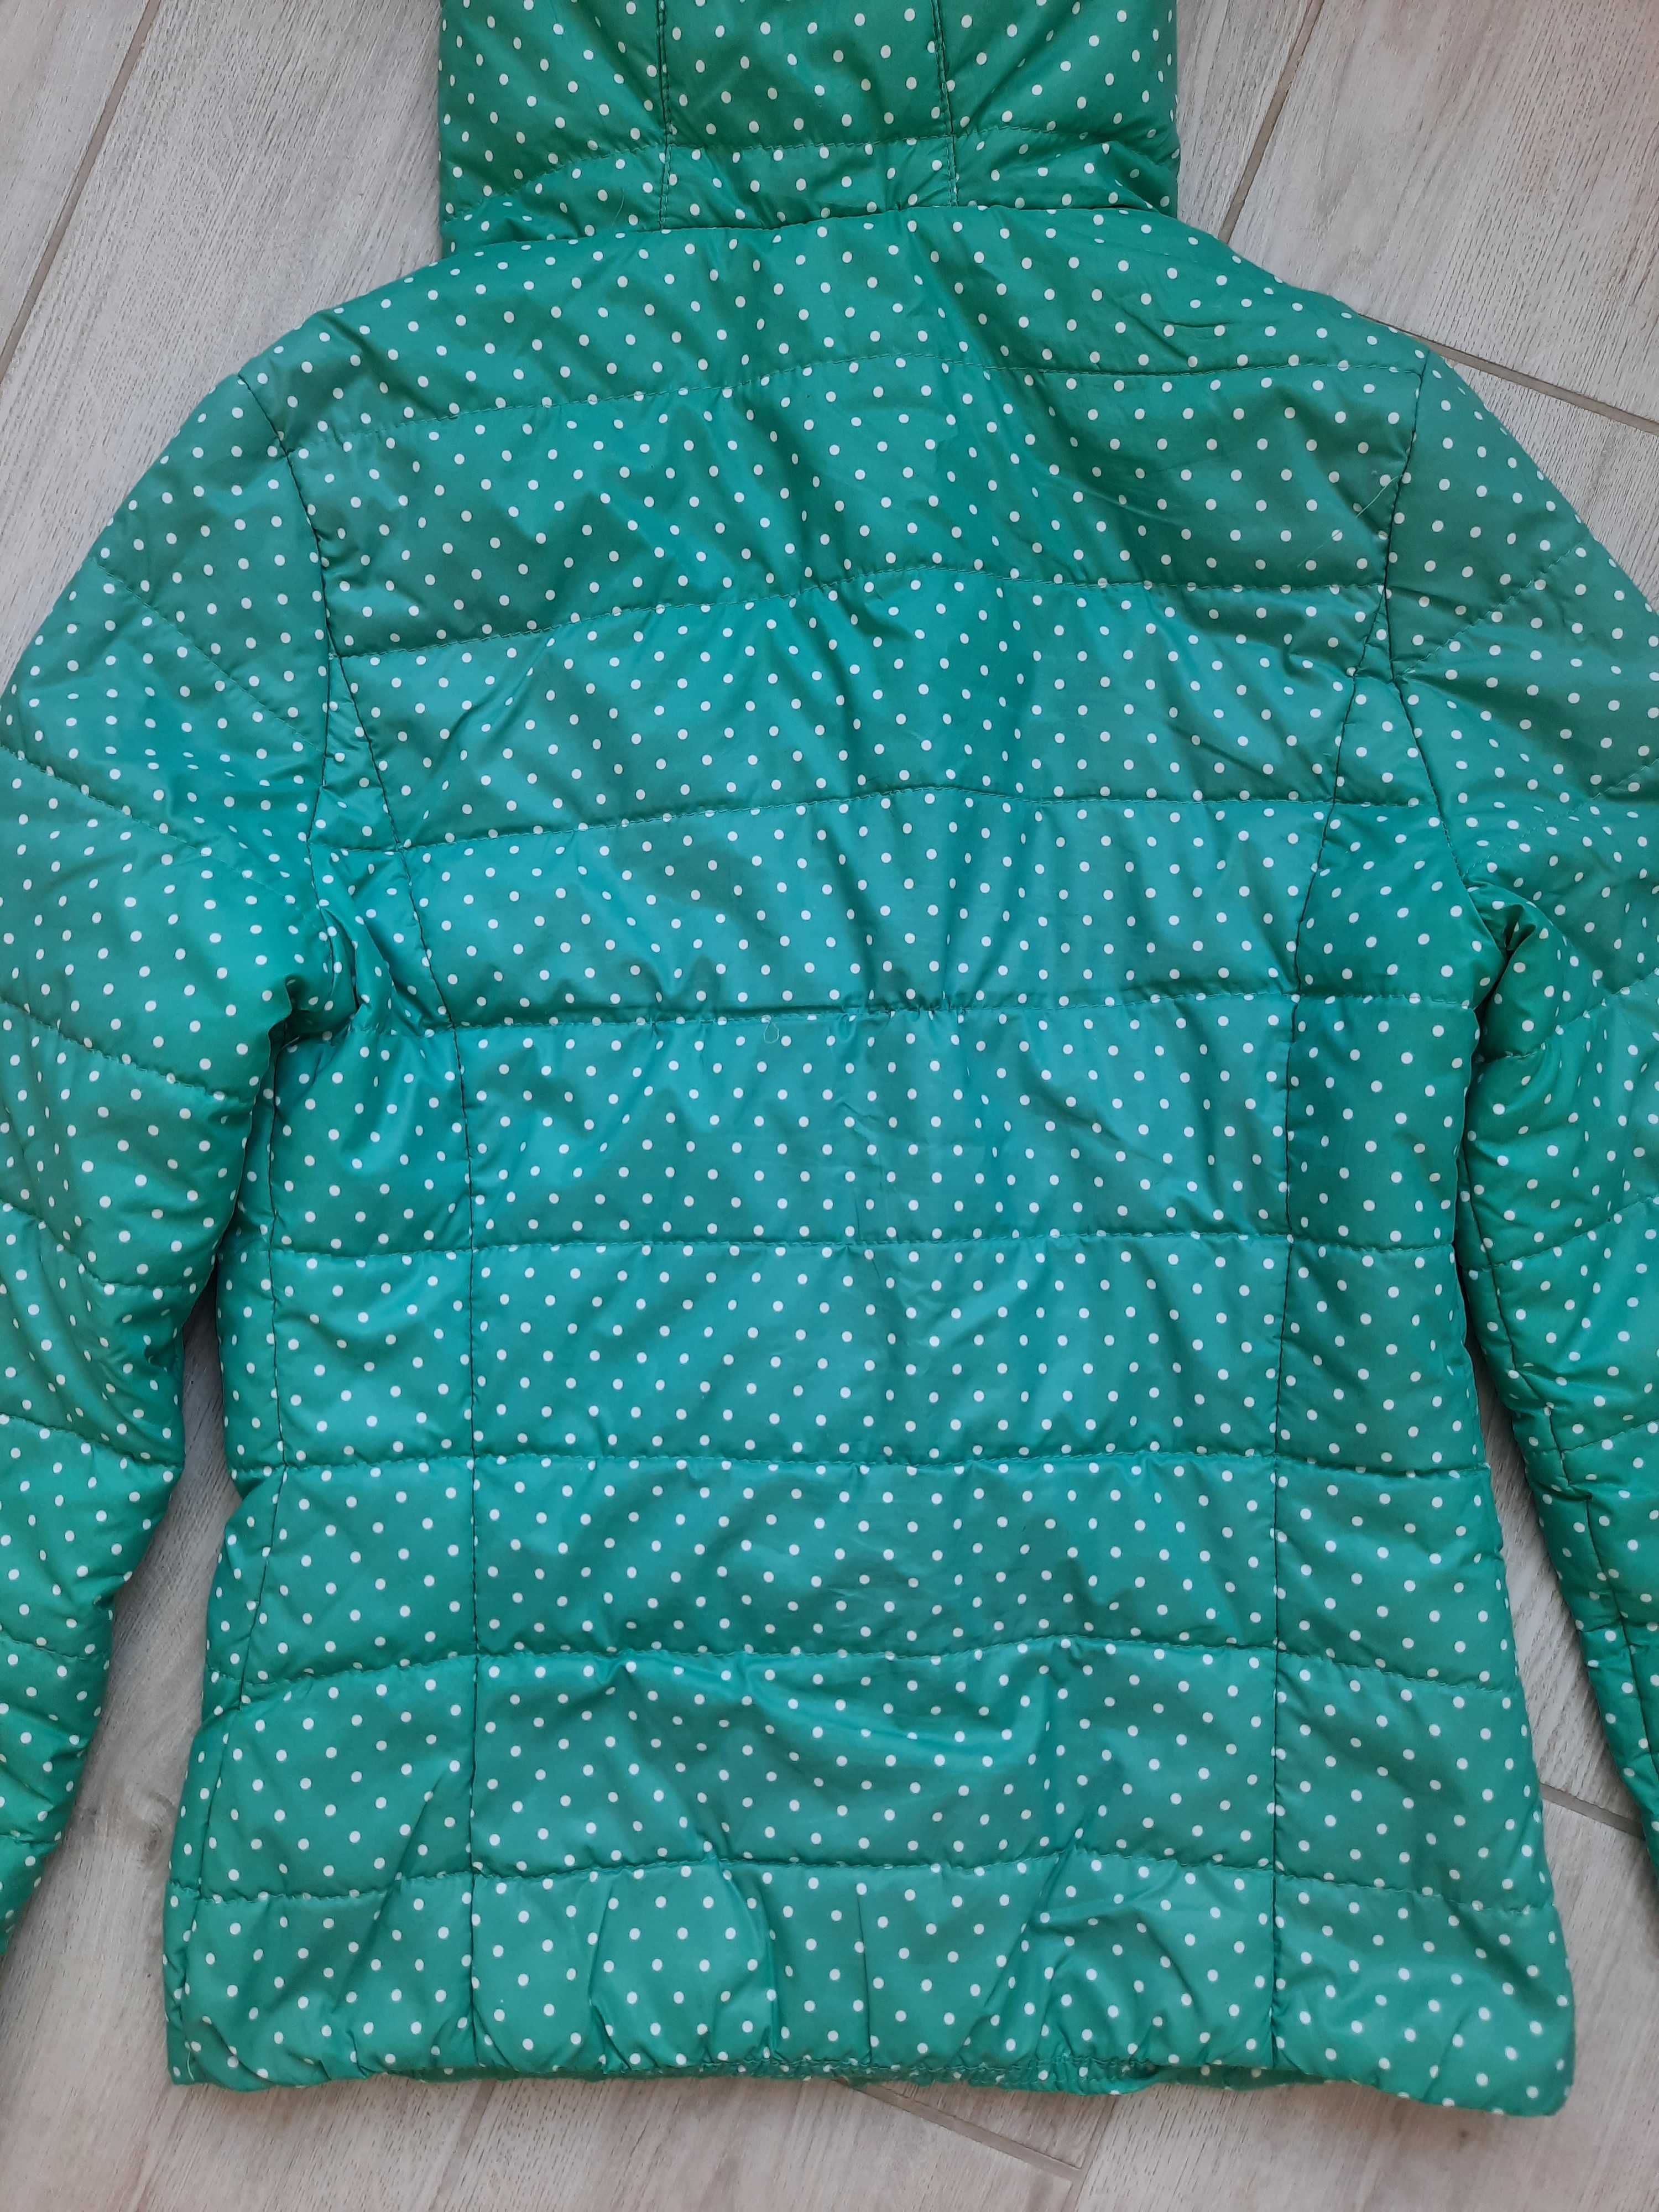 Куртка демисезонная зеленая в горошек (есть замеры), р-р S